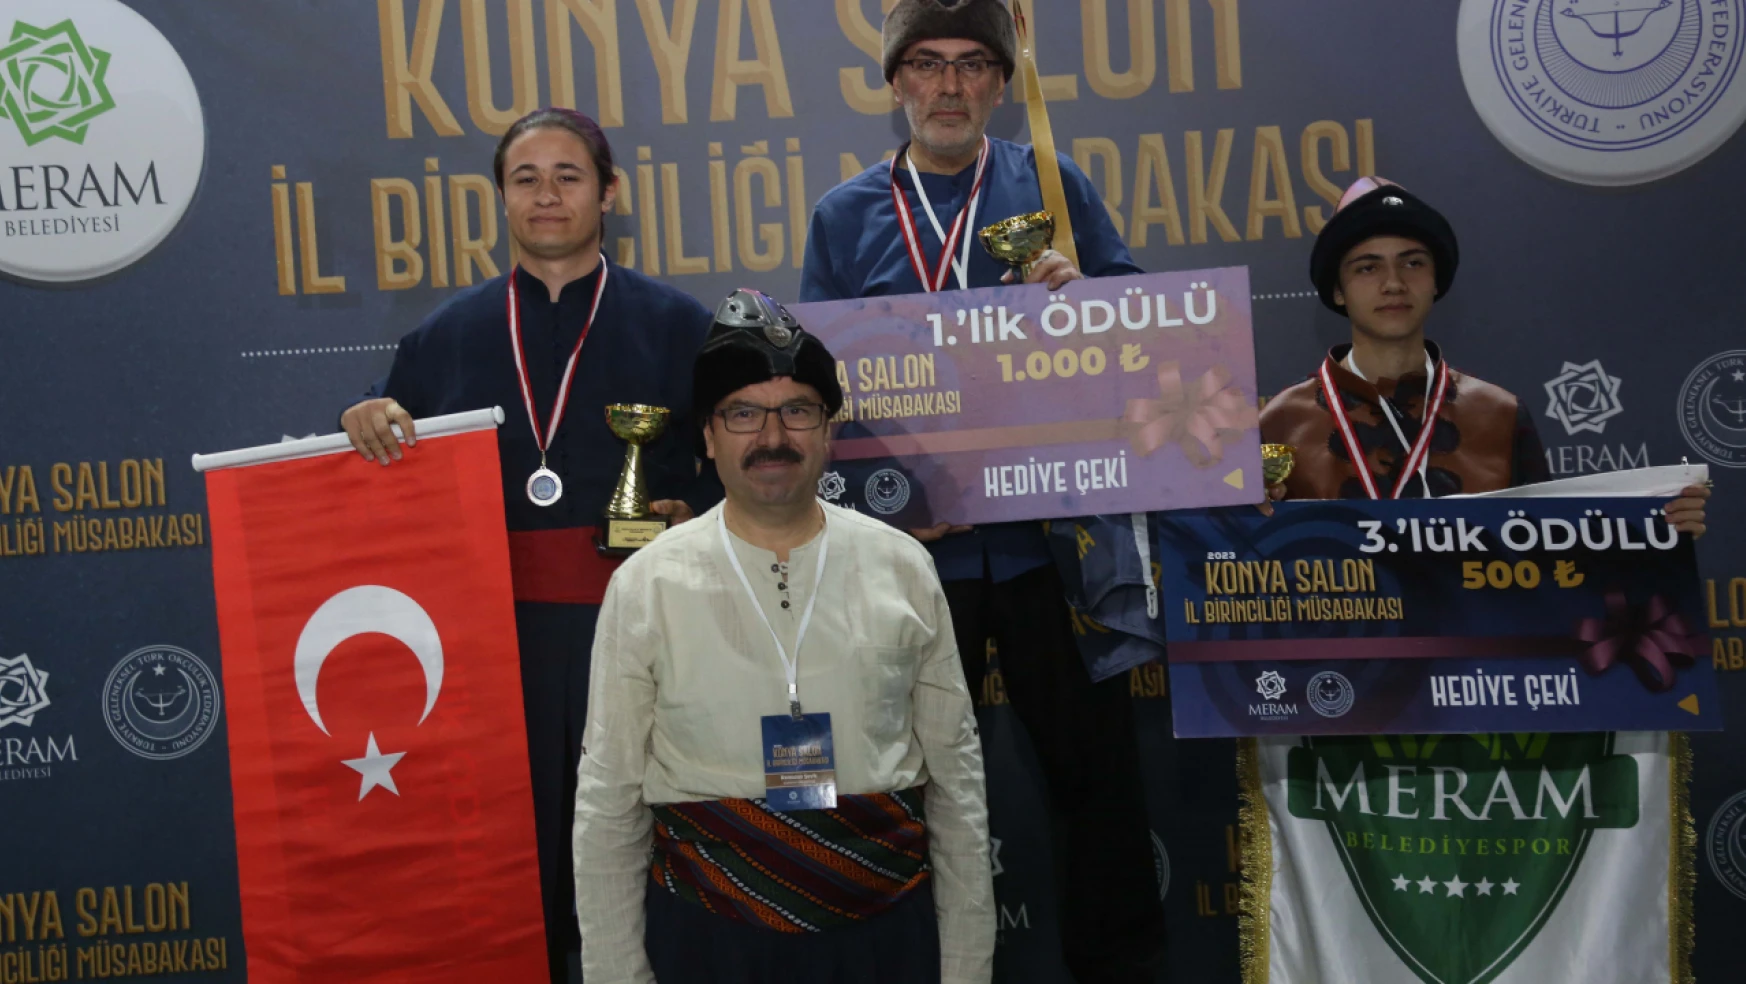 Meram, Türk okçuluk salon şampiyonasına ev sahipliği yaptı